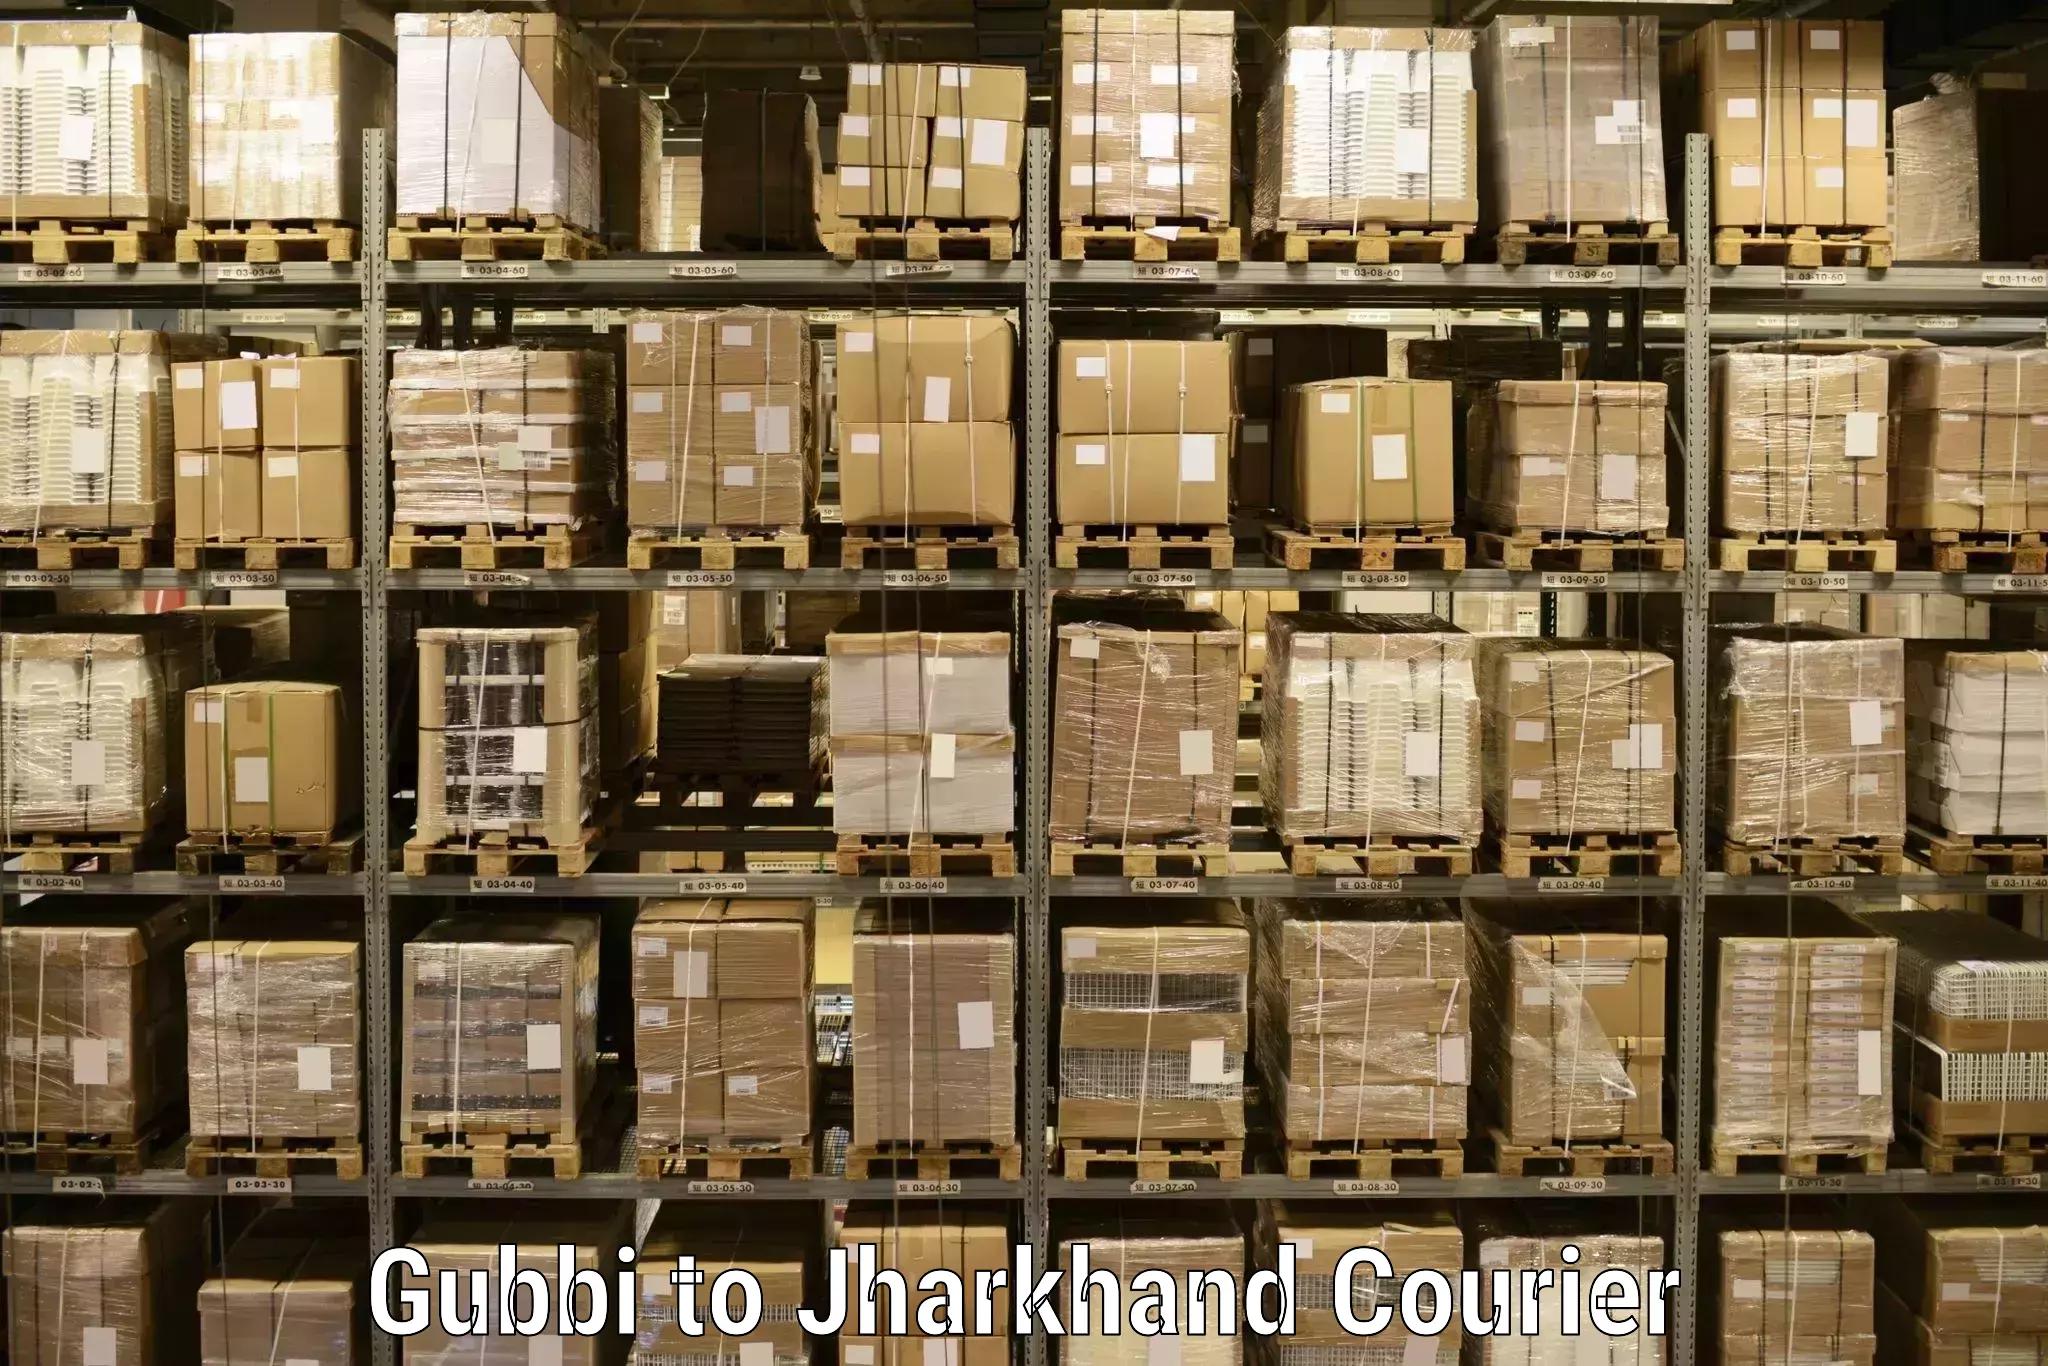 Courier service comparison Gubbi to Deoghar